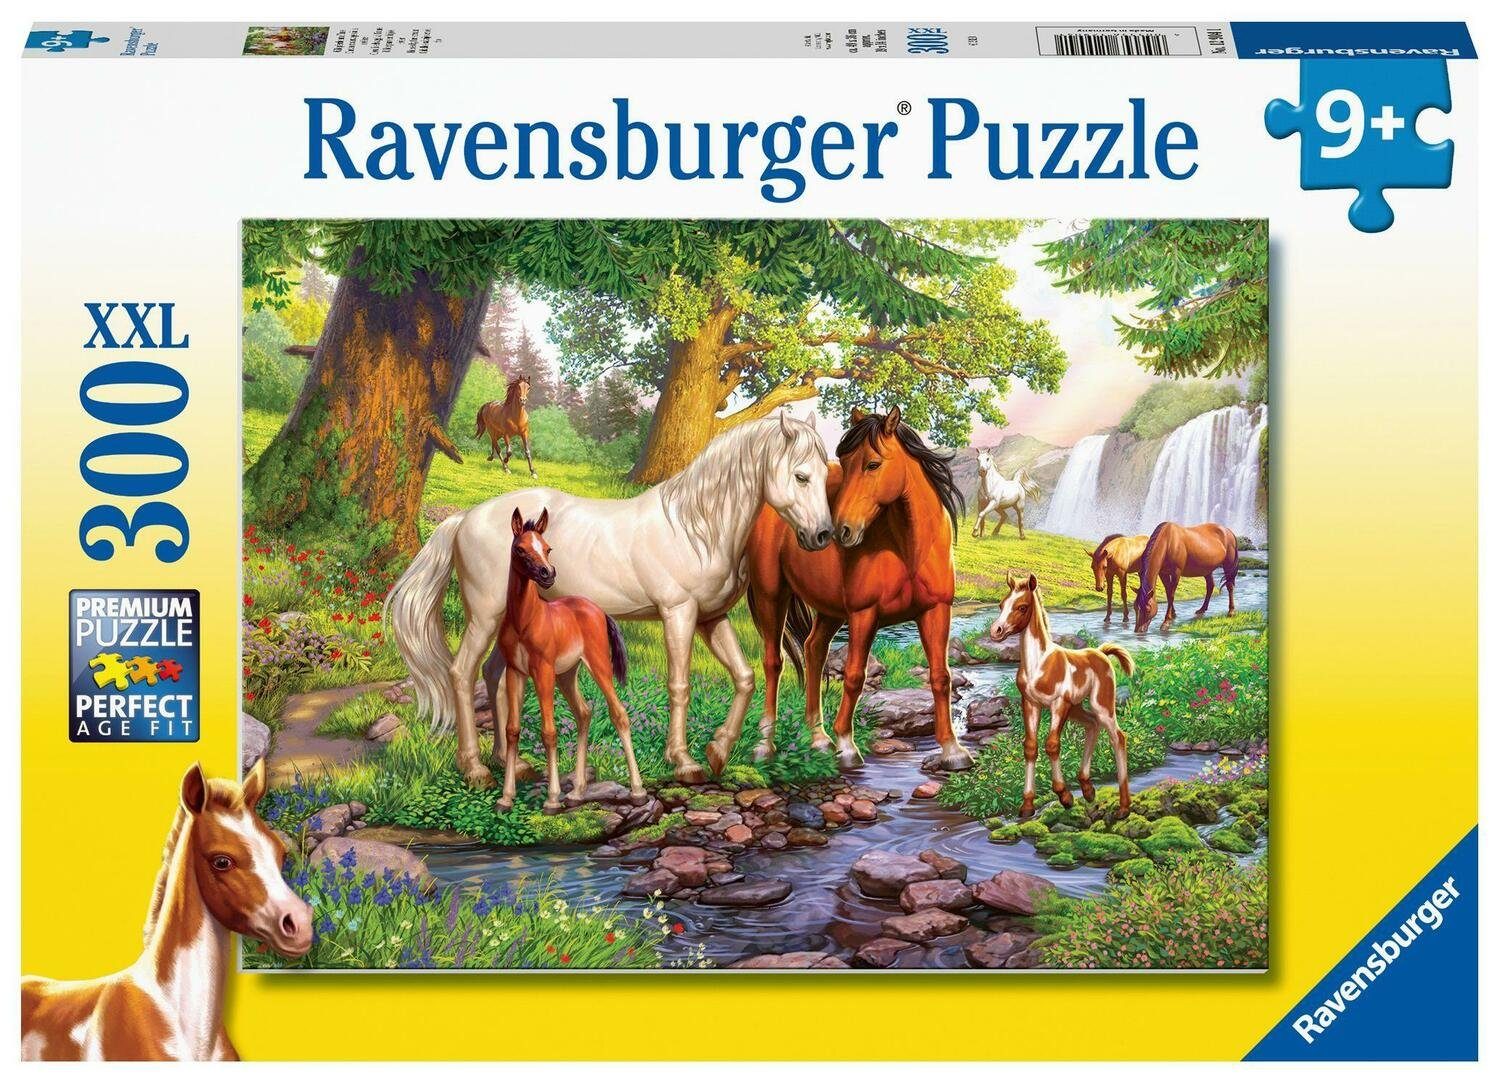 Ravensburger Puzzle Ravensburger Kinderpuzzle - 12904 Wildpferde am Fluss -..., 300 Puzzleteile